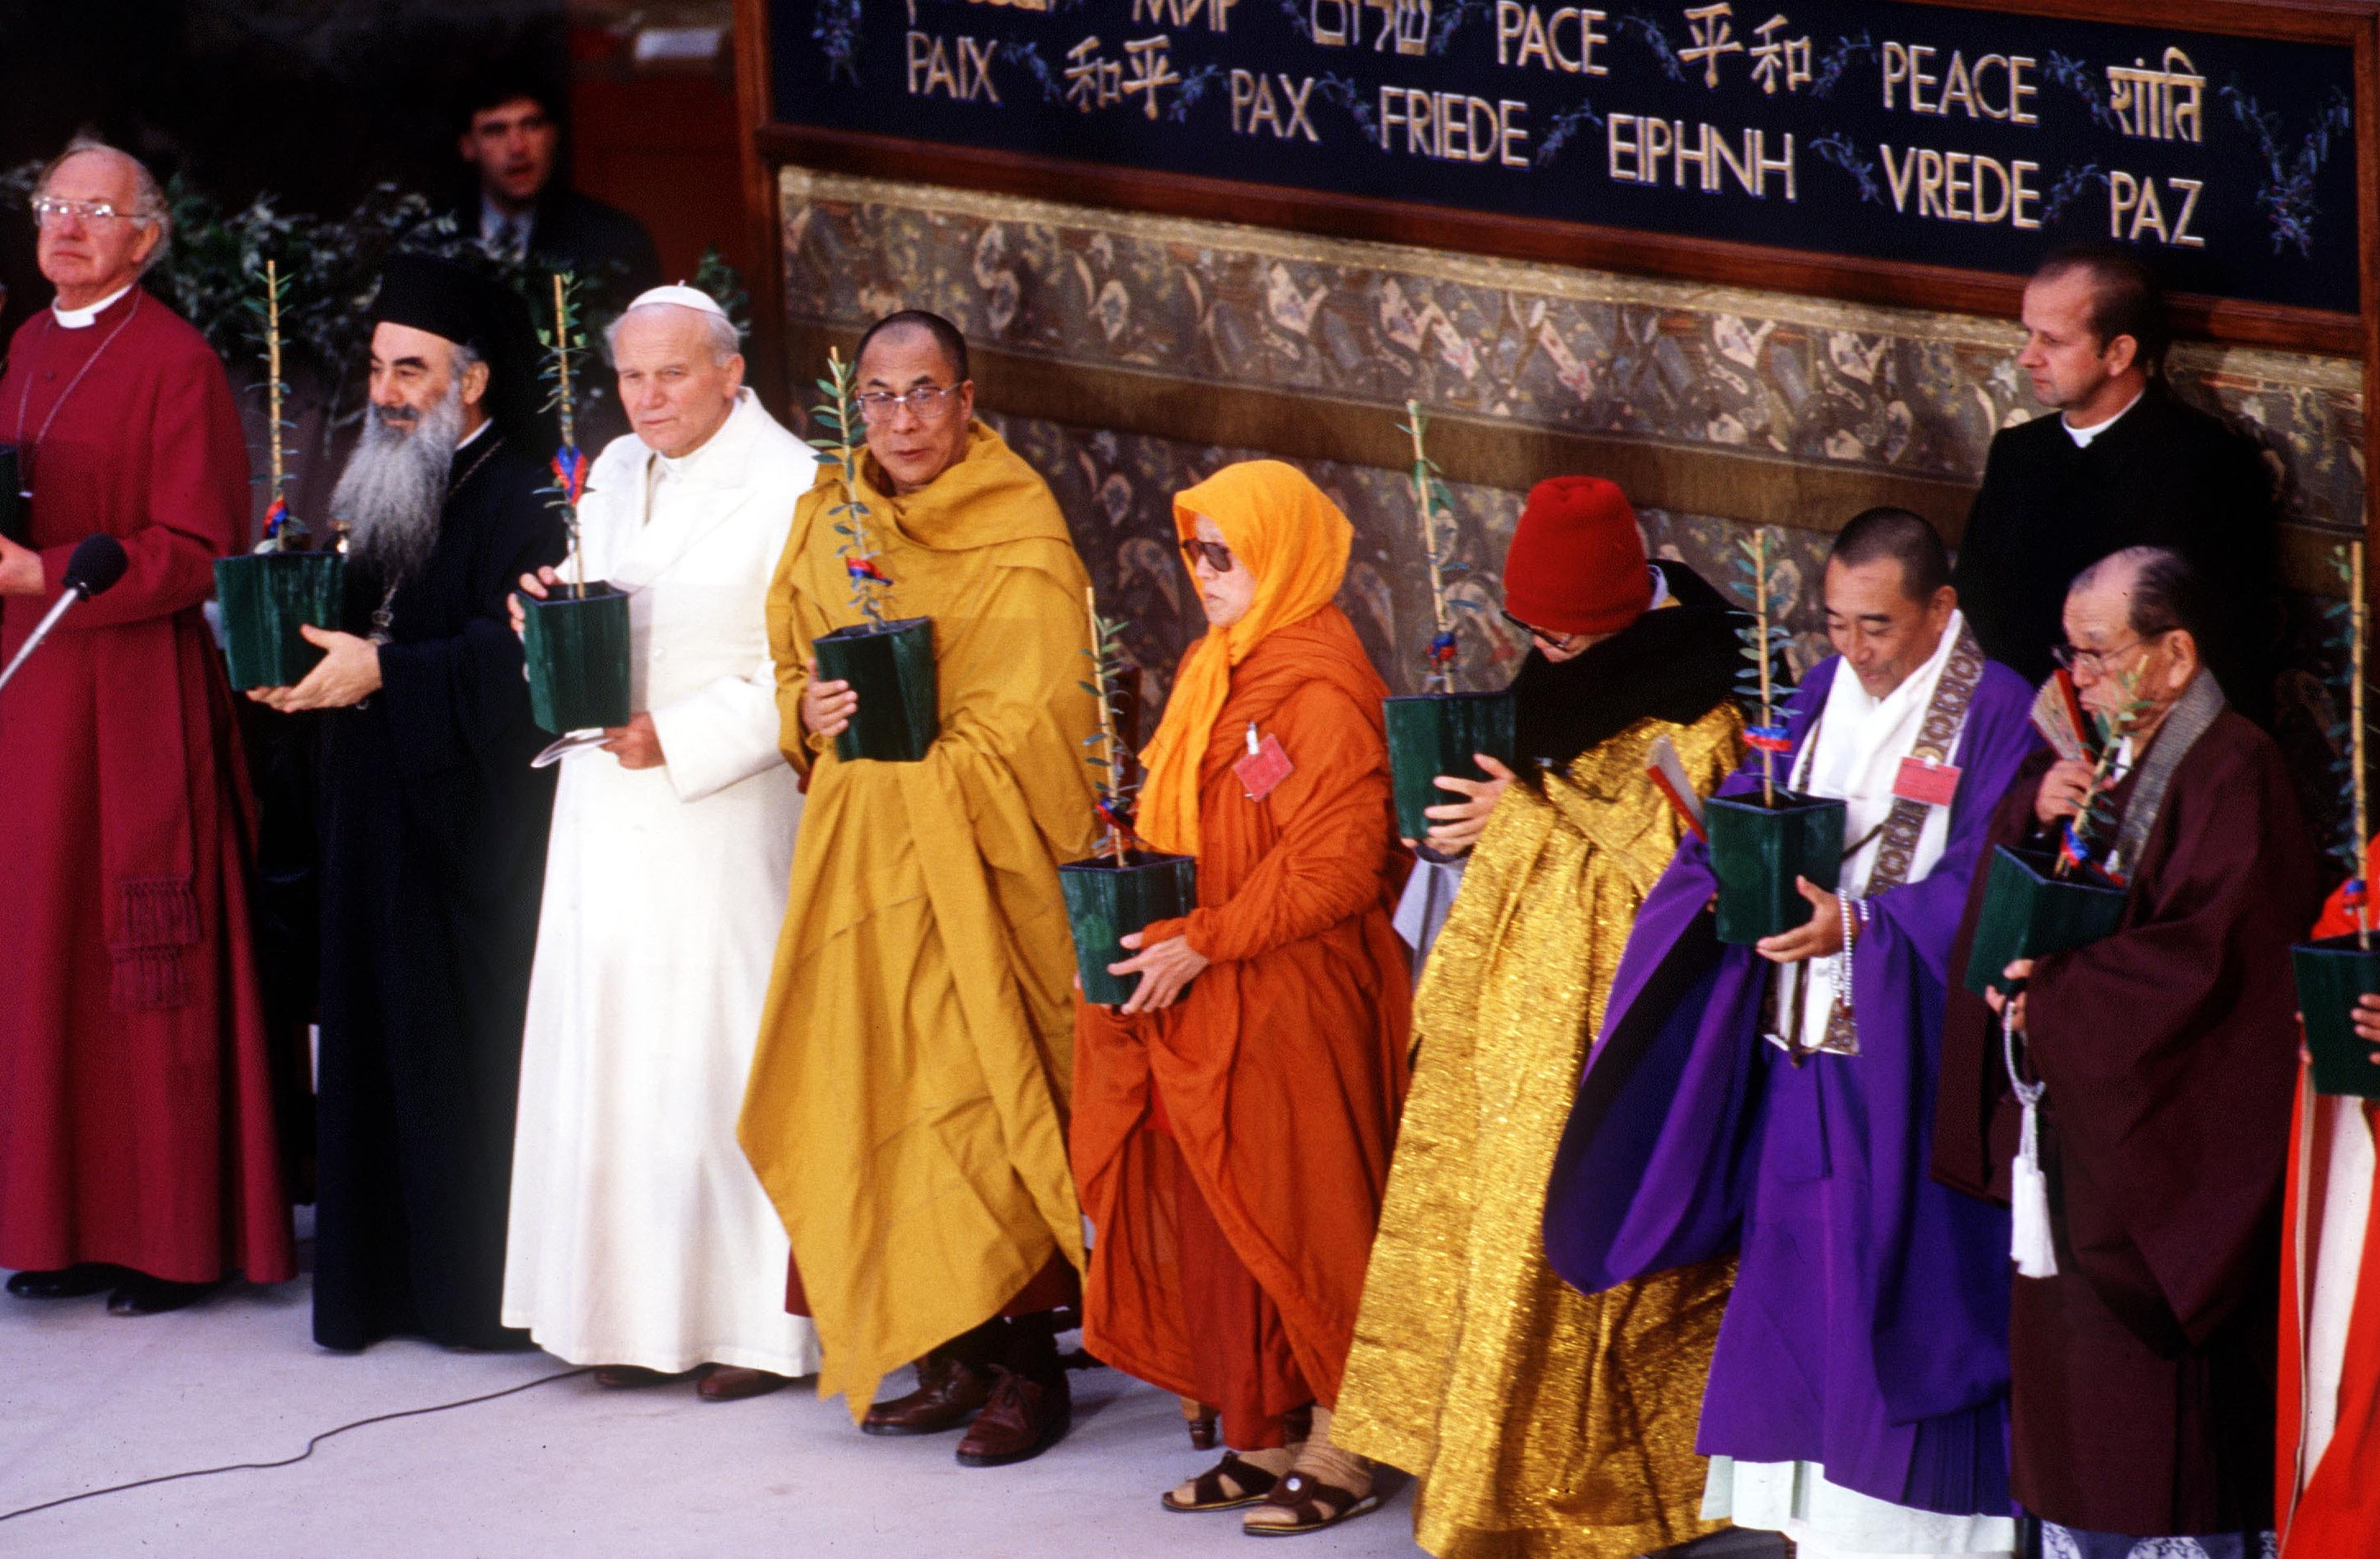 26 maggio 1986: incontro per la pace con i rappresentanti di tutte le religioni ad Assisi. A destra del pontefice il Dalai Lama